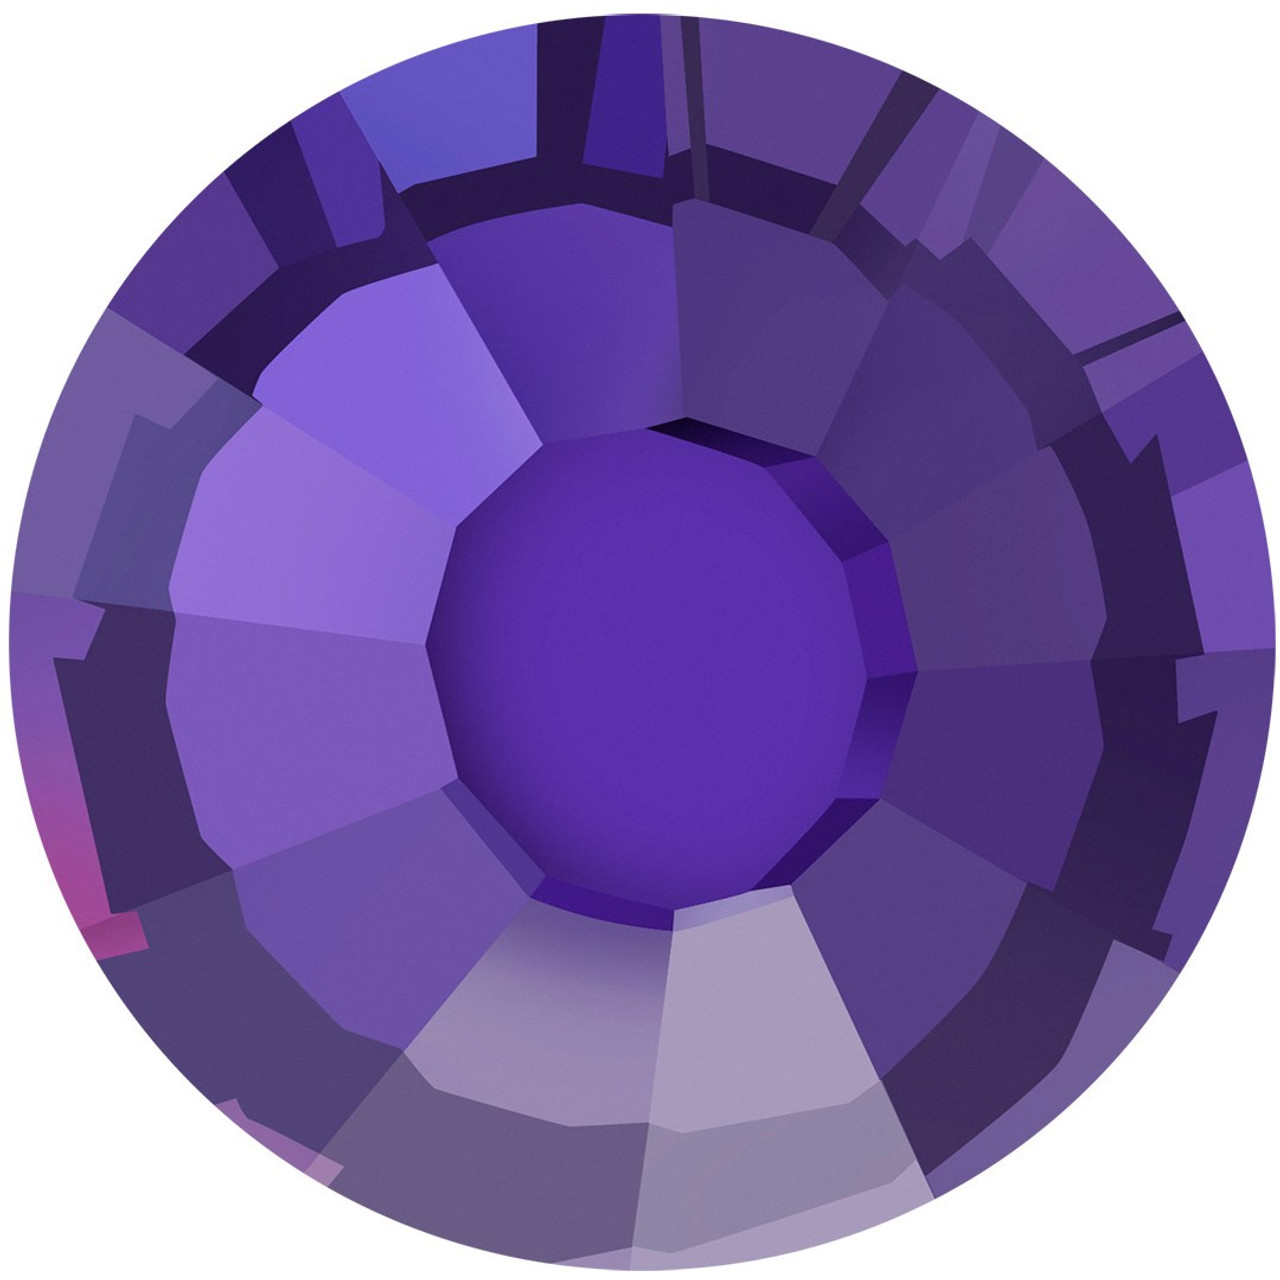 PriceLess Crystal Flatback Rhinestones Purple Rain 12ss - Rhinestones  Unlimited